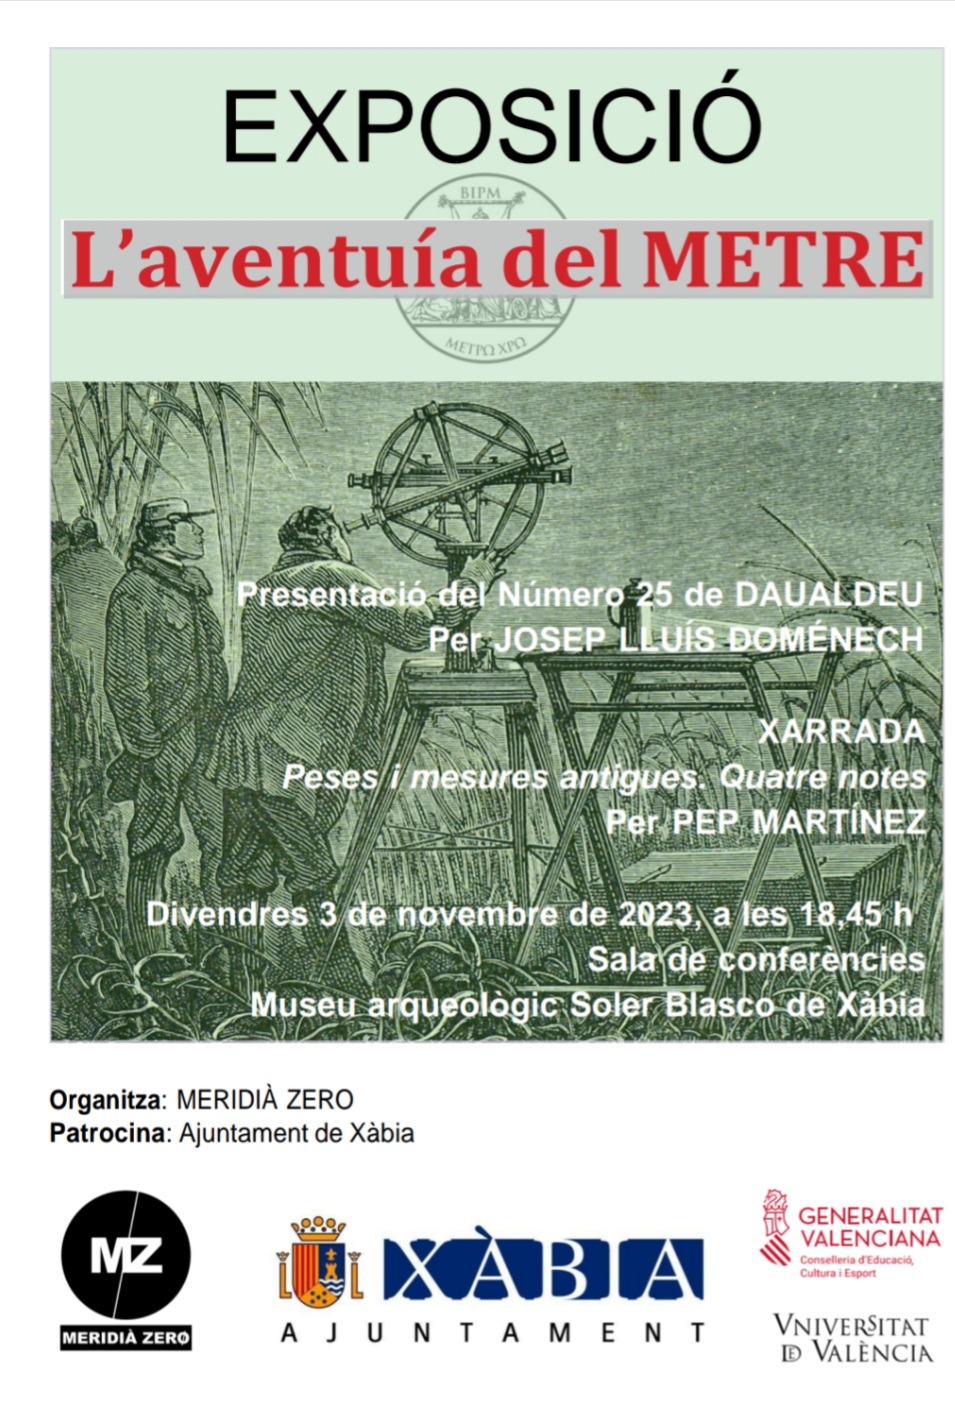 Presentació del número 25 de la revista DAUALDEU per Josep Lluís Doménch. Xarrada “Peses i mesures antigues. Quatre notes.” per Pep Martínez.